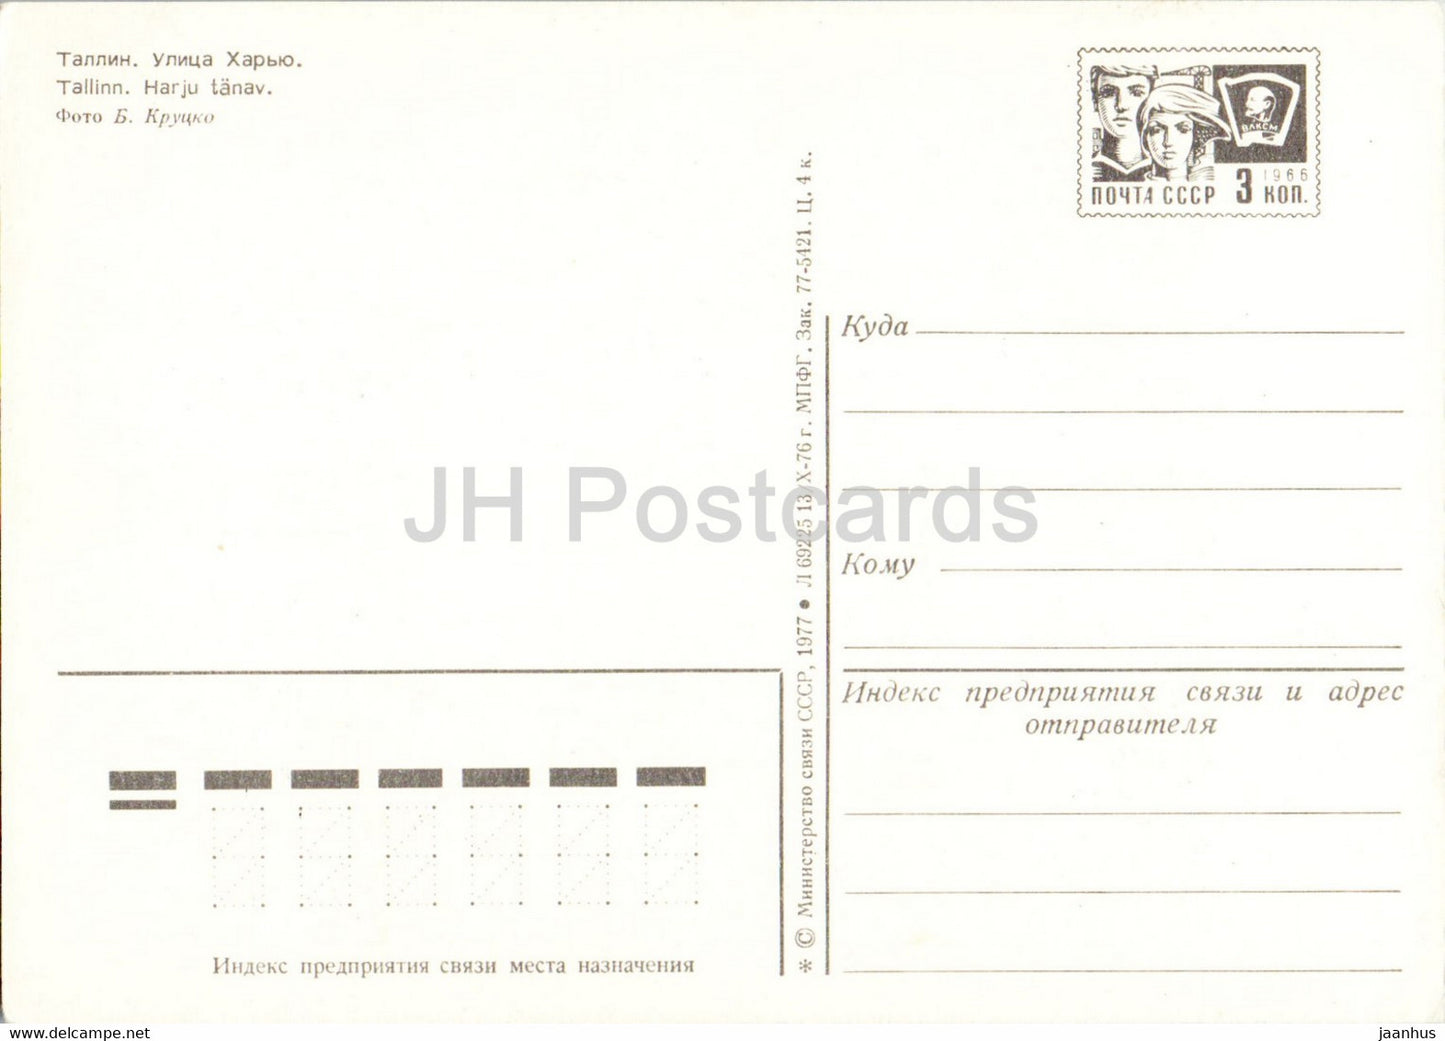 Tallinn - Harju street - Old Town - postal stationery - 1977 - Estonia USSR - unused